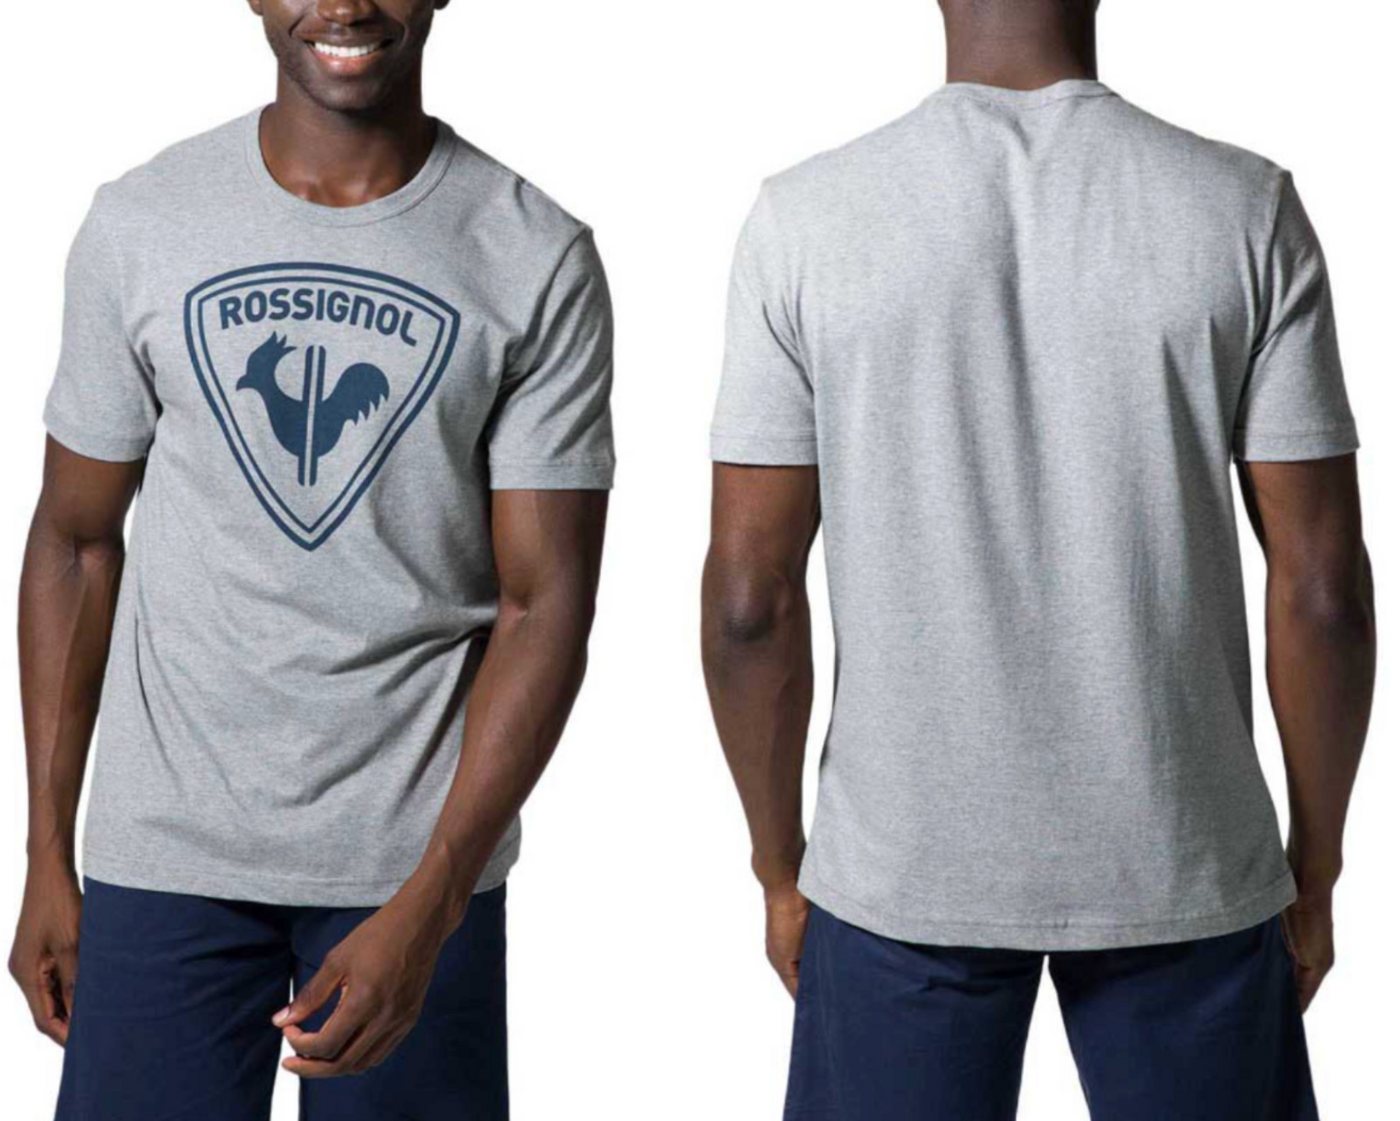 Rossignol T-Shirt ROSSIGNOL LOGO TEE T-shirt Shirt Supreme Comfort Cotton Sport Top XXL von Rossignol